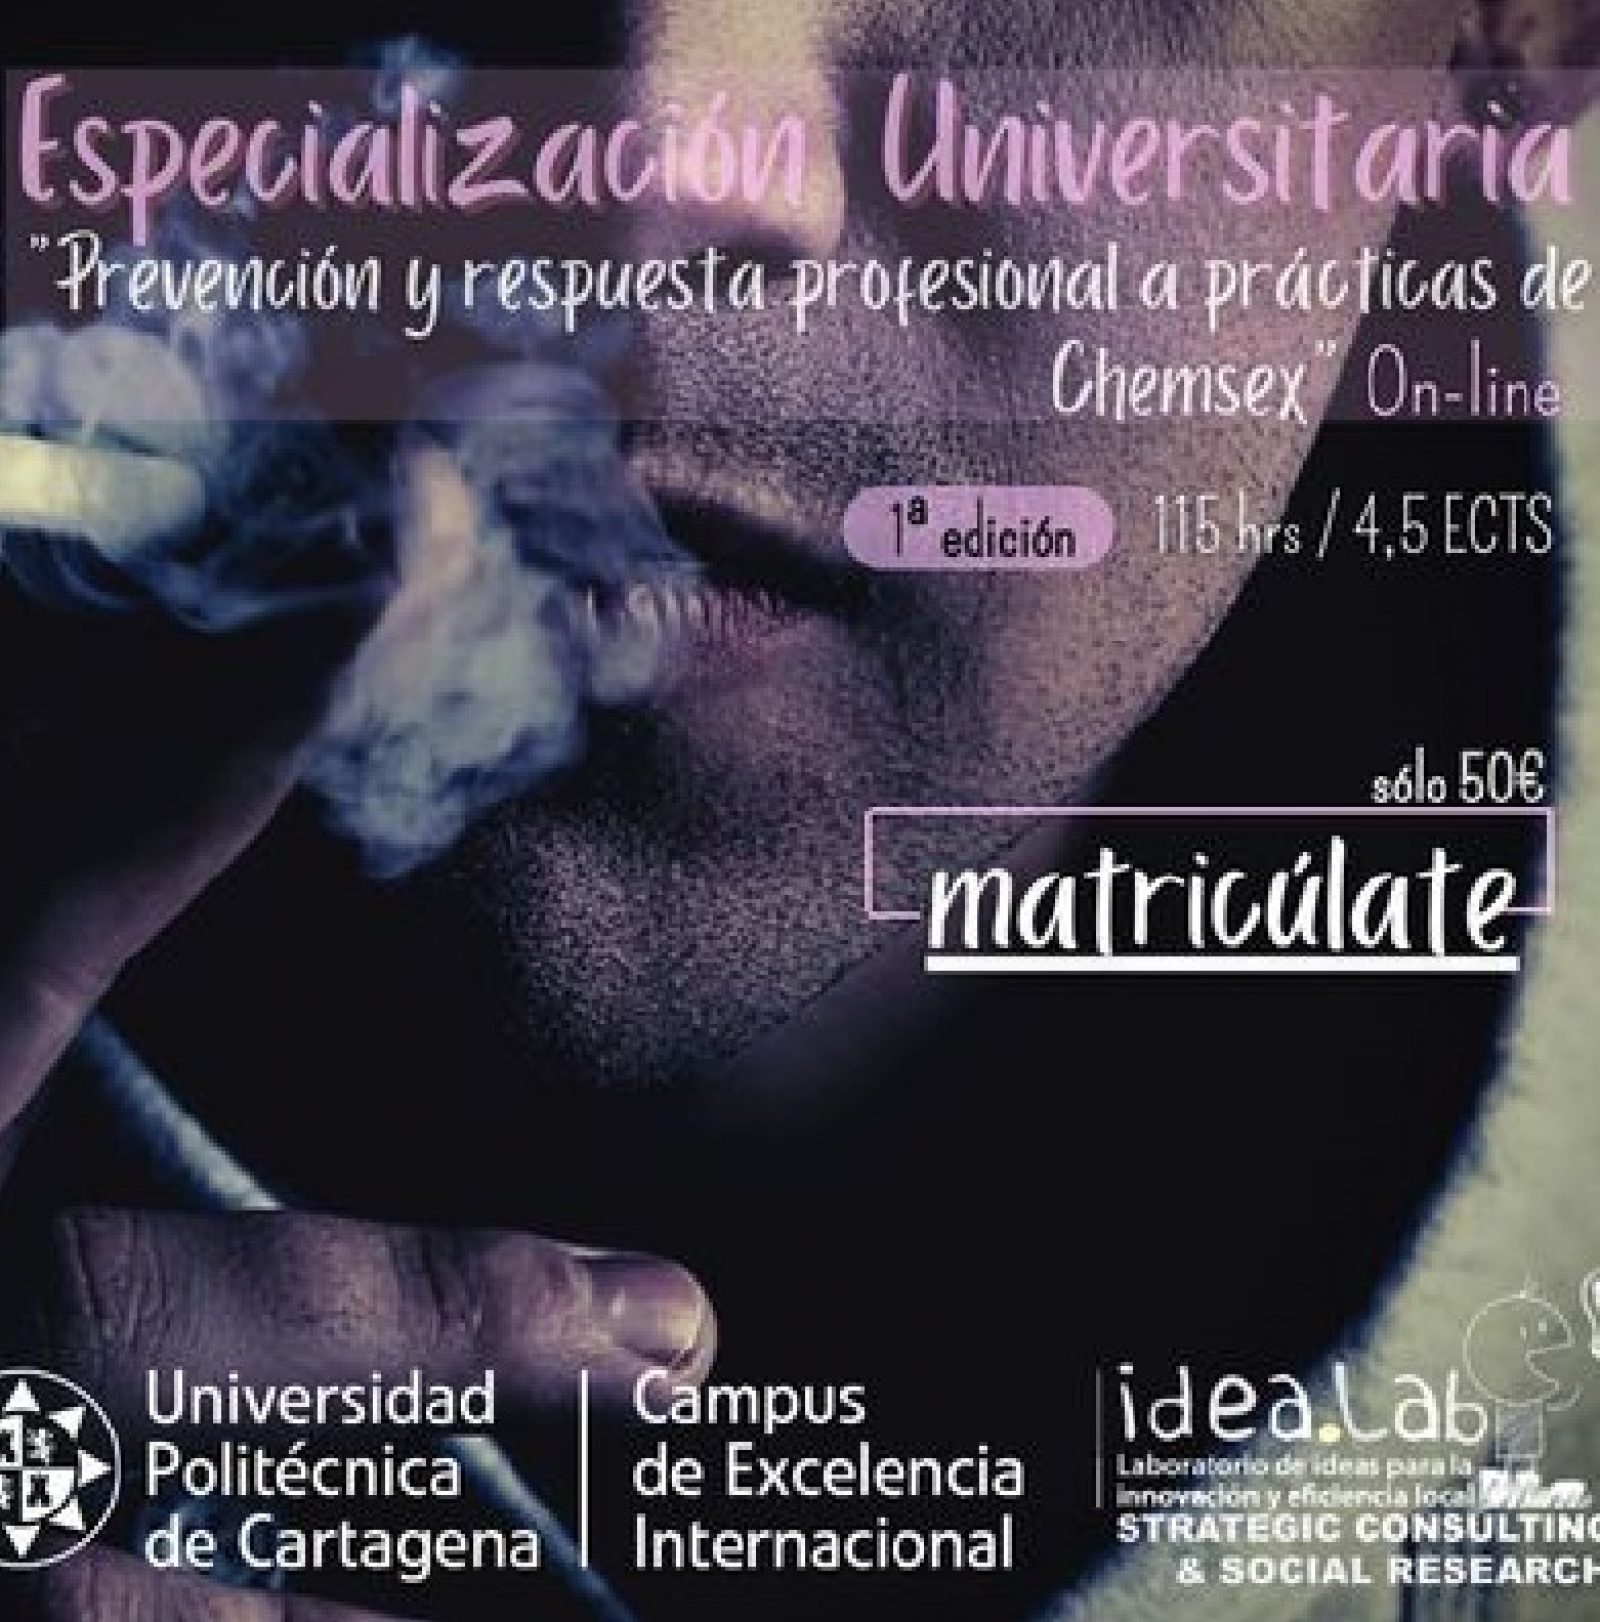 Especialización Universitaria: Prevención y respuesta profesional a prácticas de Chemsex